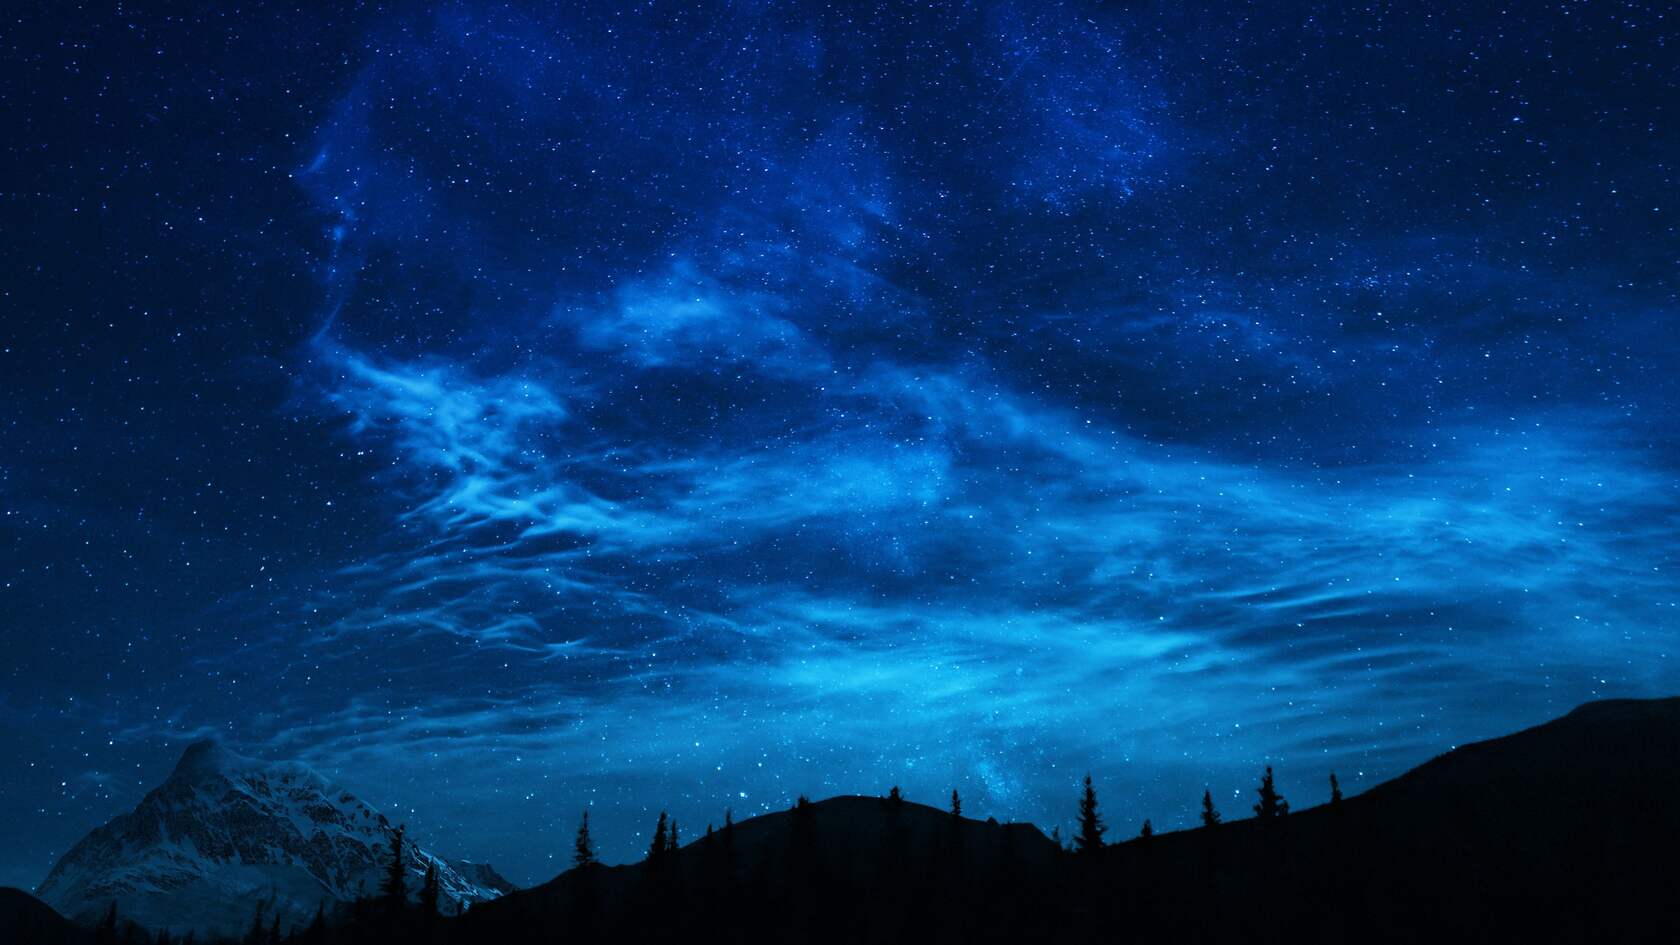 星光灿烂 漫天繁星 雪山 山林 树木 唯美山间夜色夜景壁纸图片第1张图片